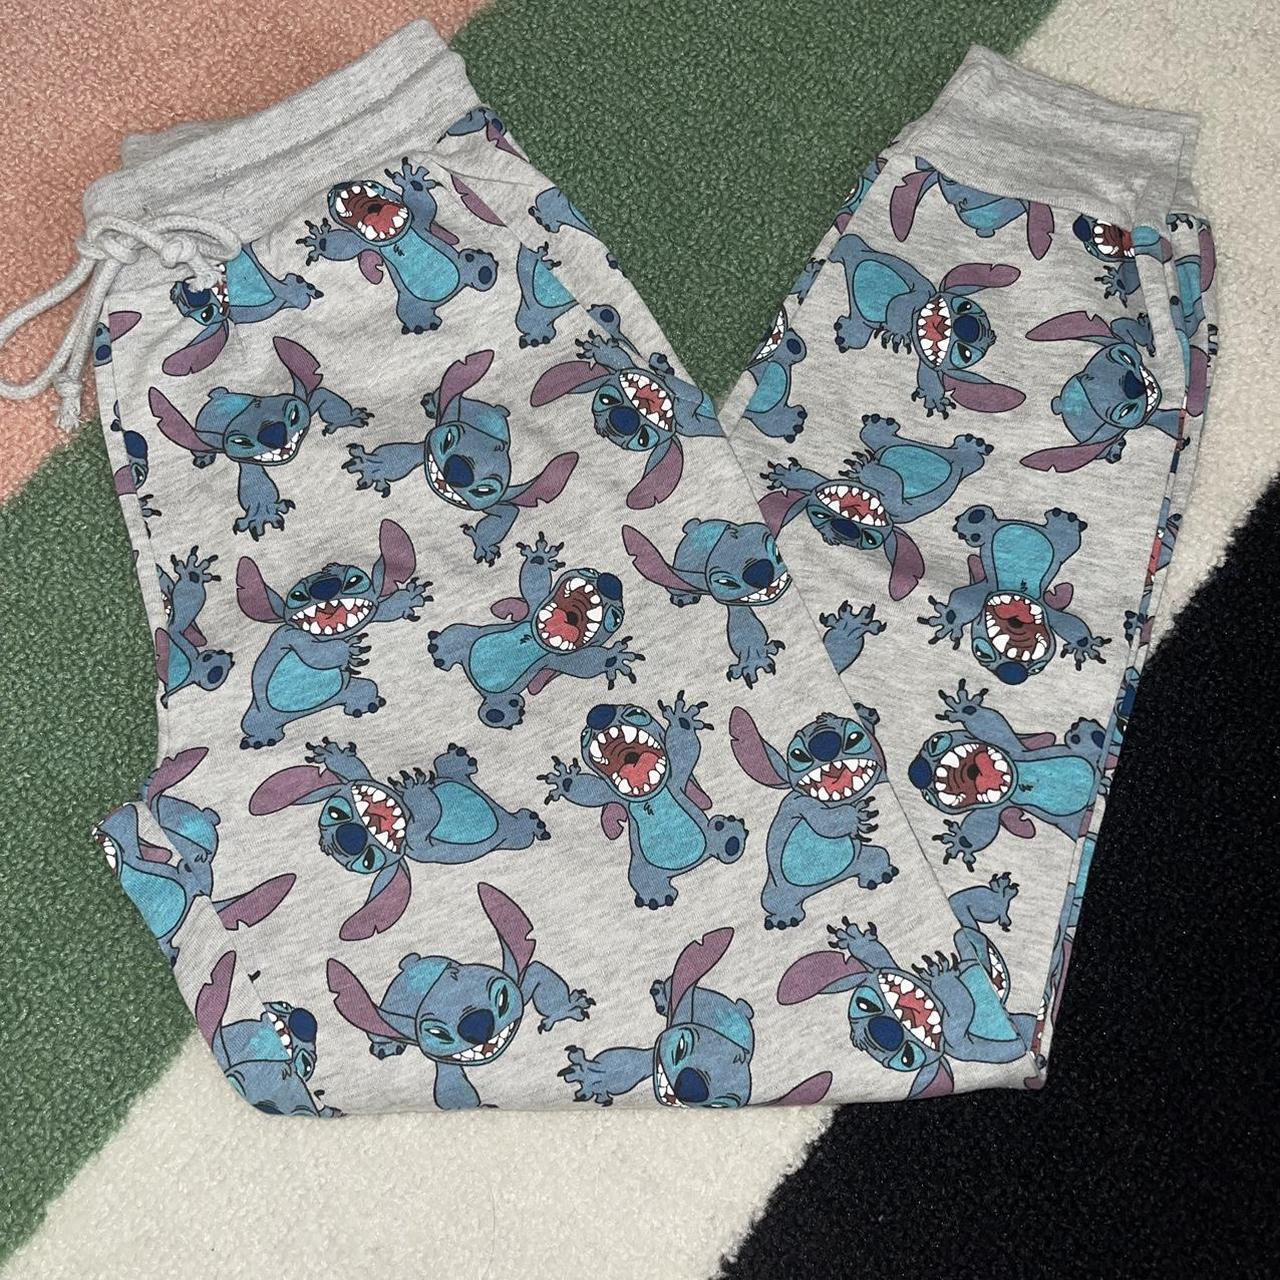 Stitch sweatpants by Disney. Color is light - Depop